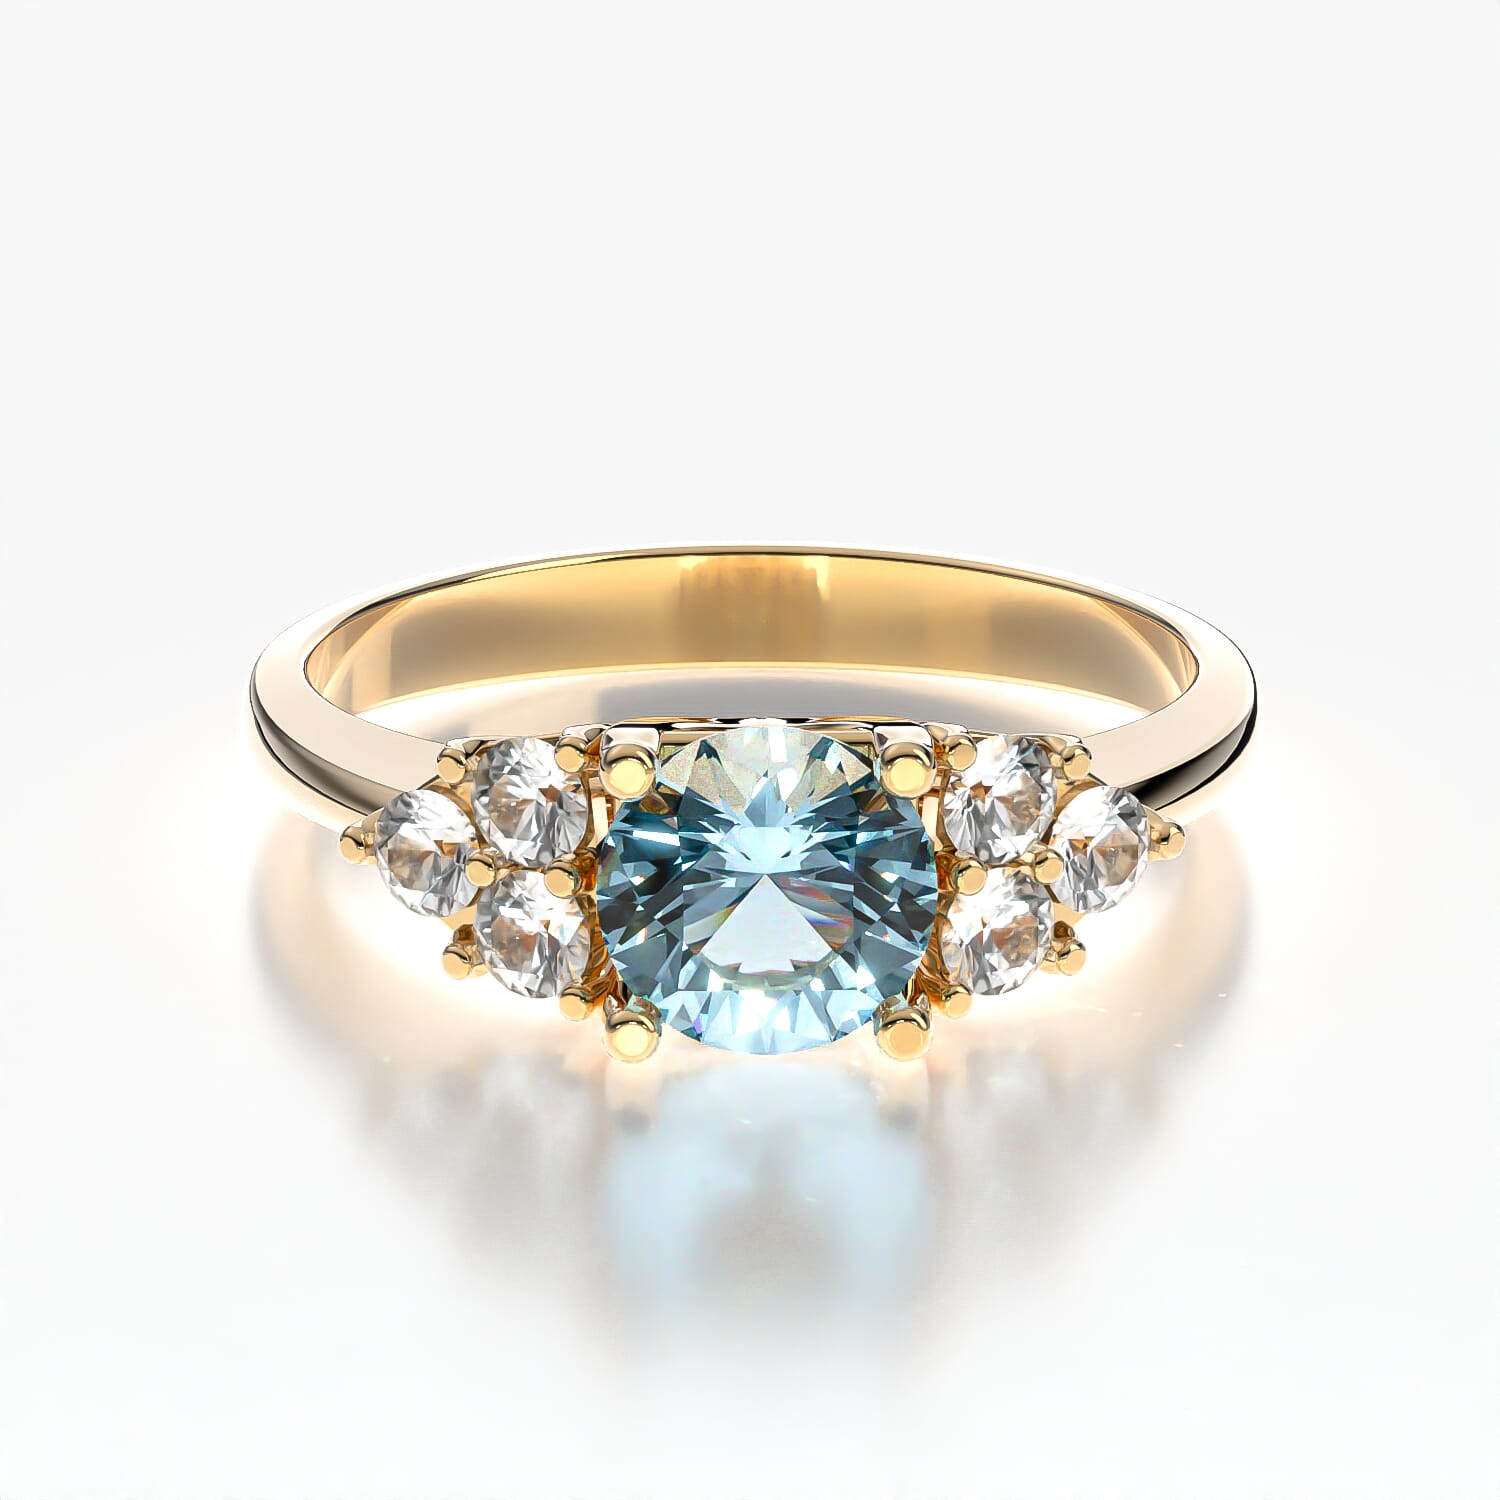 Fairytale Engagement Ring: gold, aquamarine